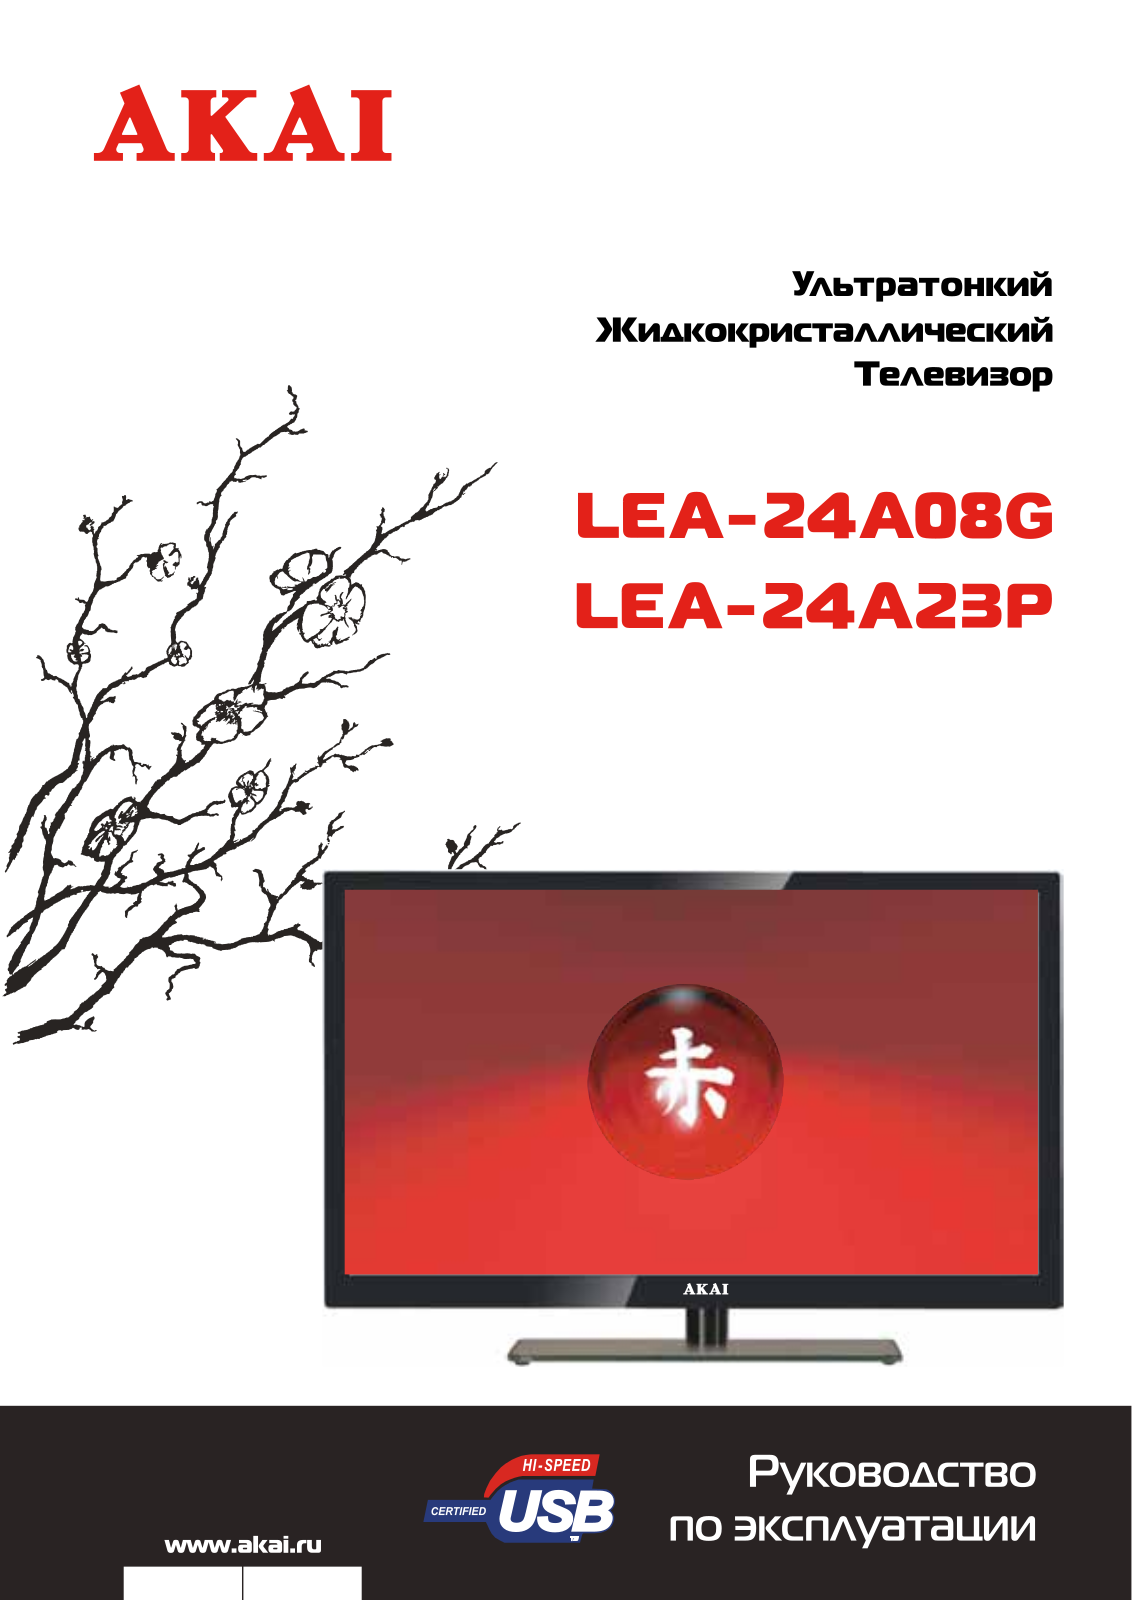 Akai LEA-24A23P User Manual